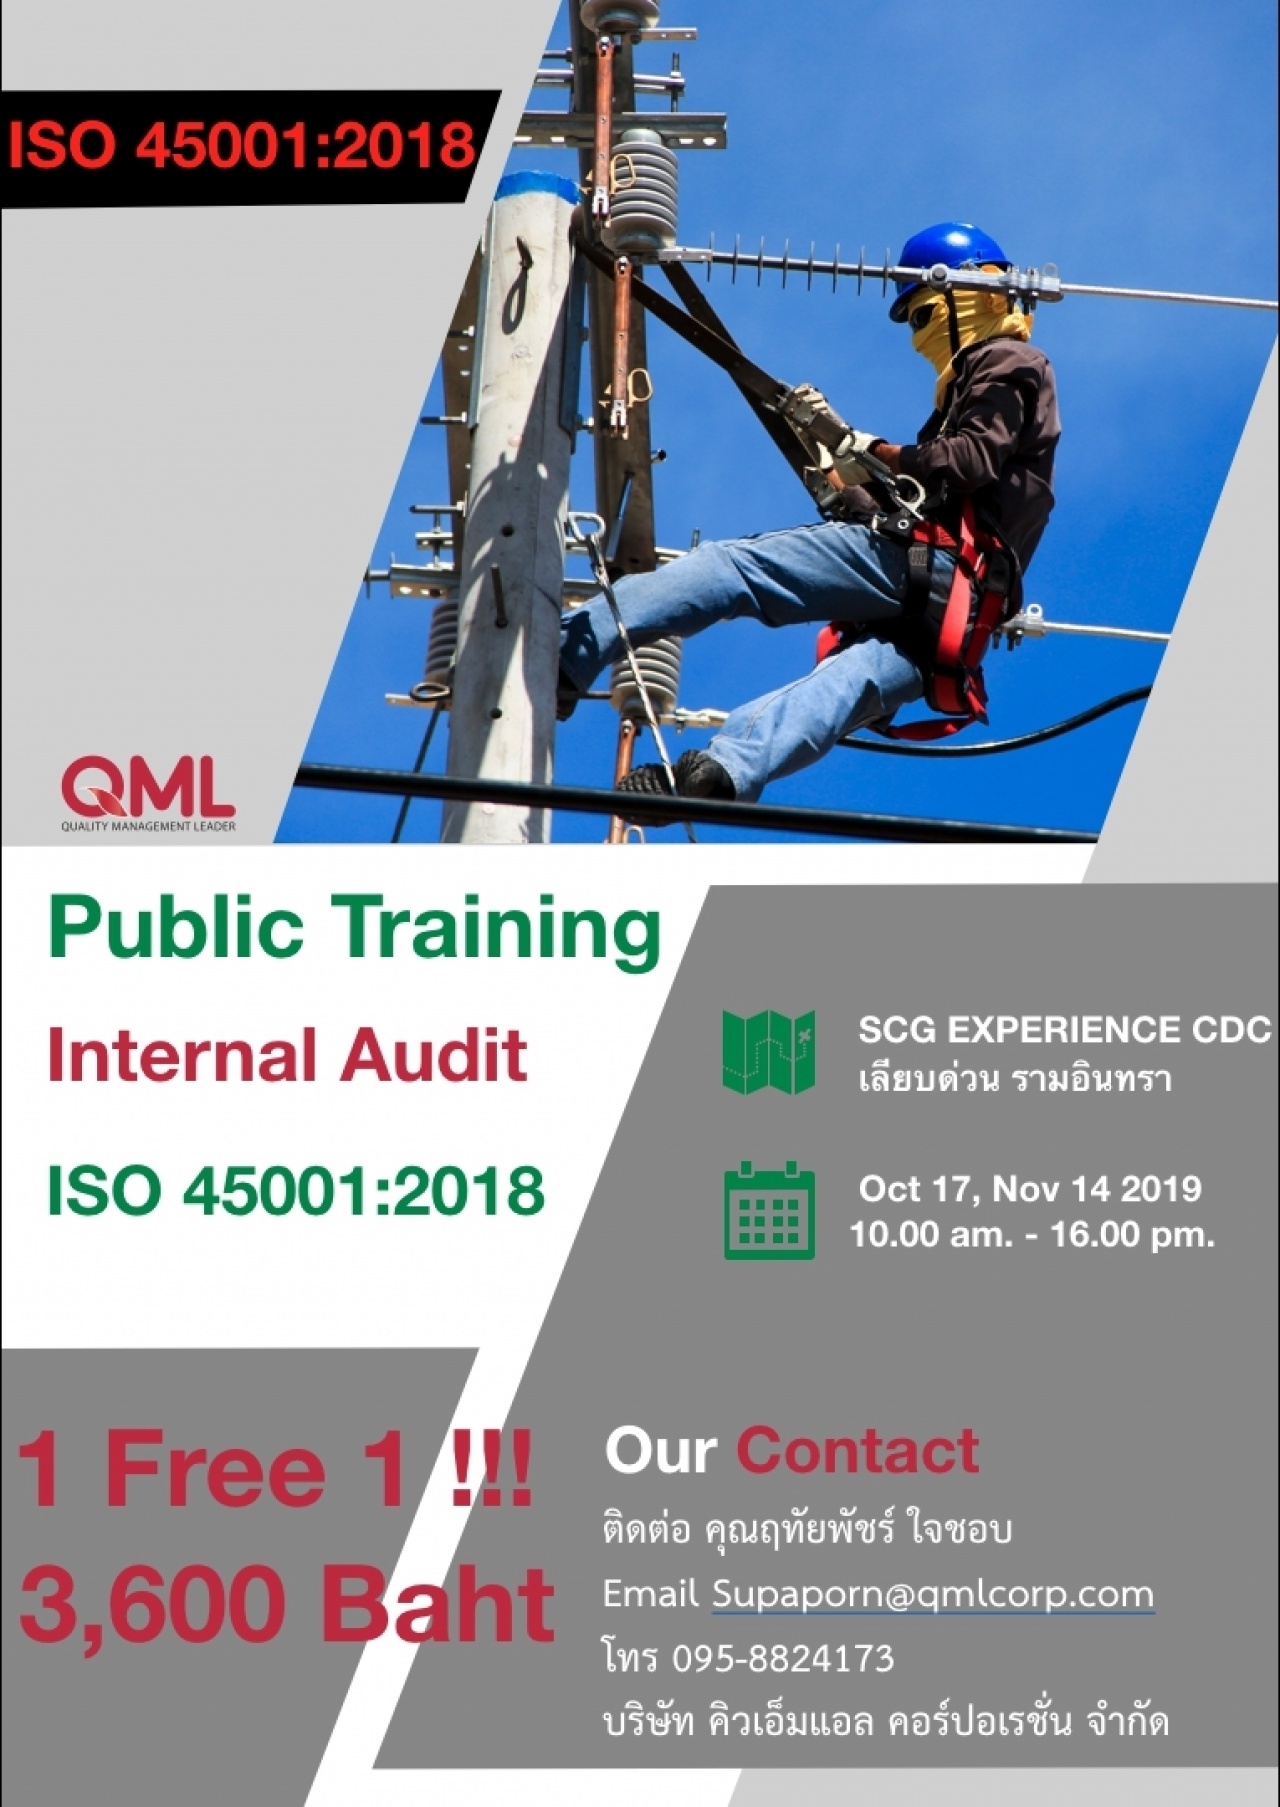 หลักสูตรการฝึกอบรม internal audit ISO 45001:2018